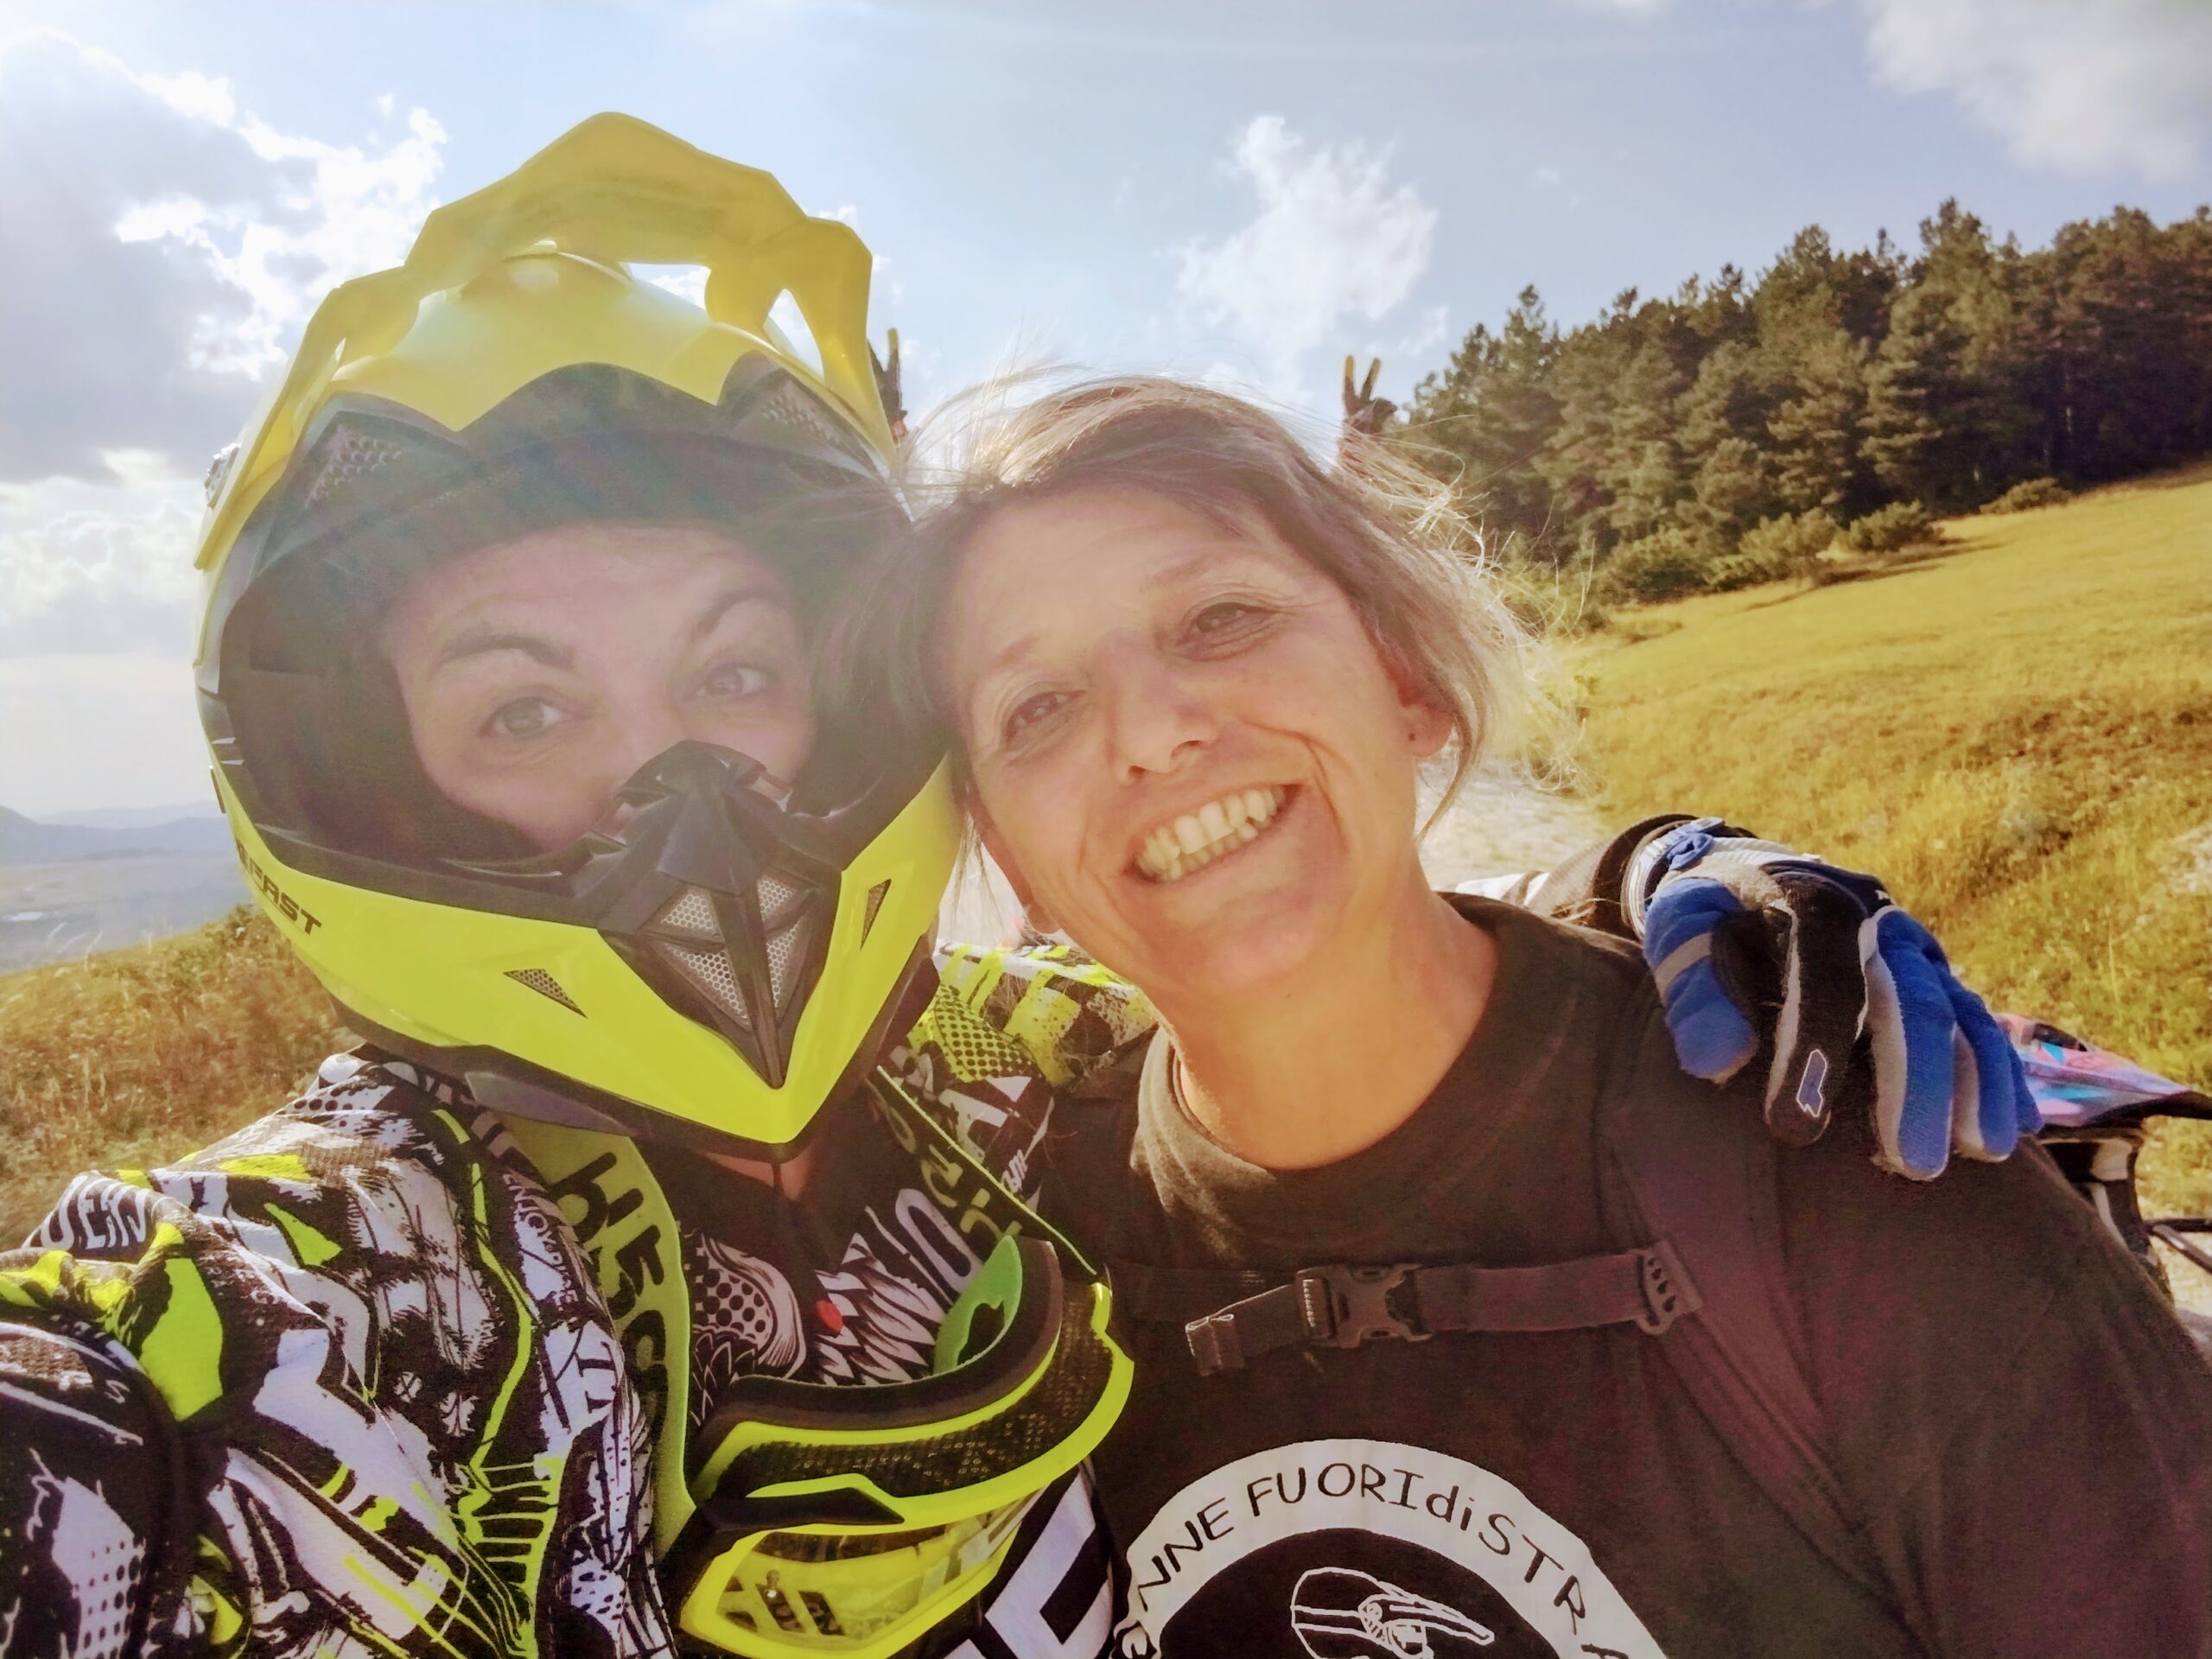 coaching in moto coach biker coaching per motocicliste wild camp donne in sella